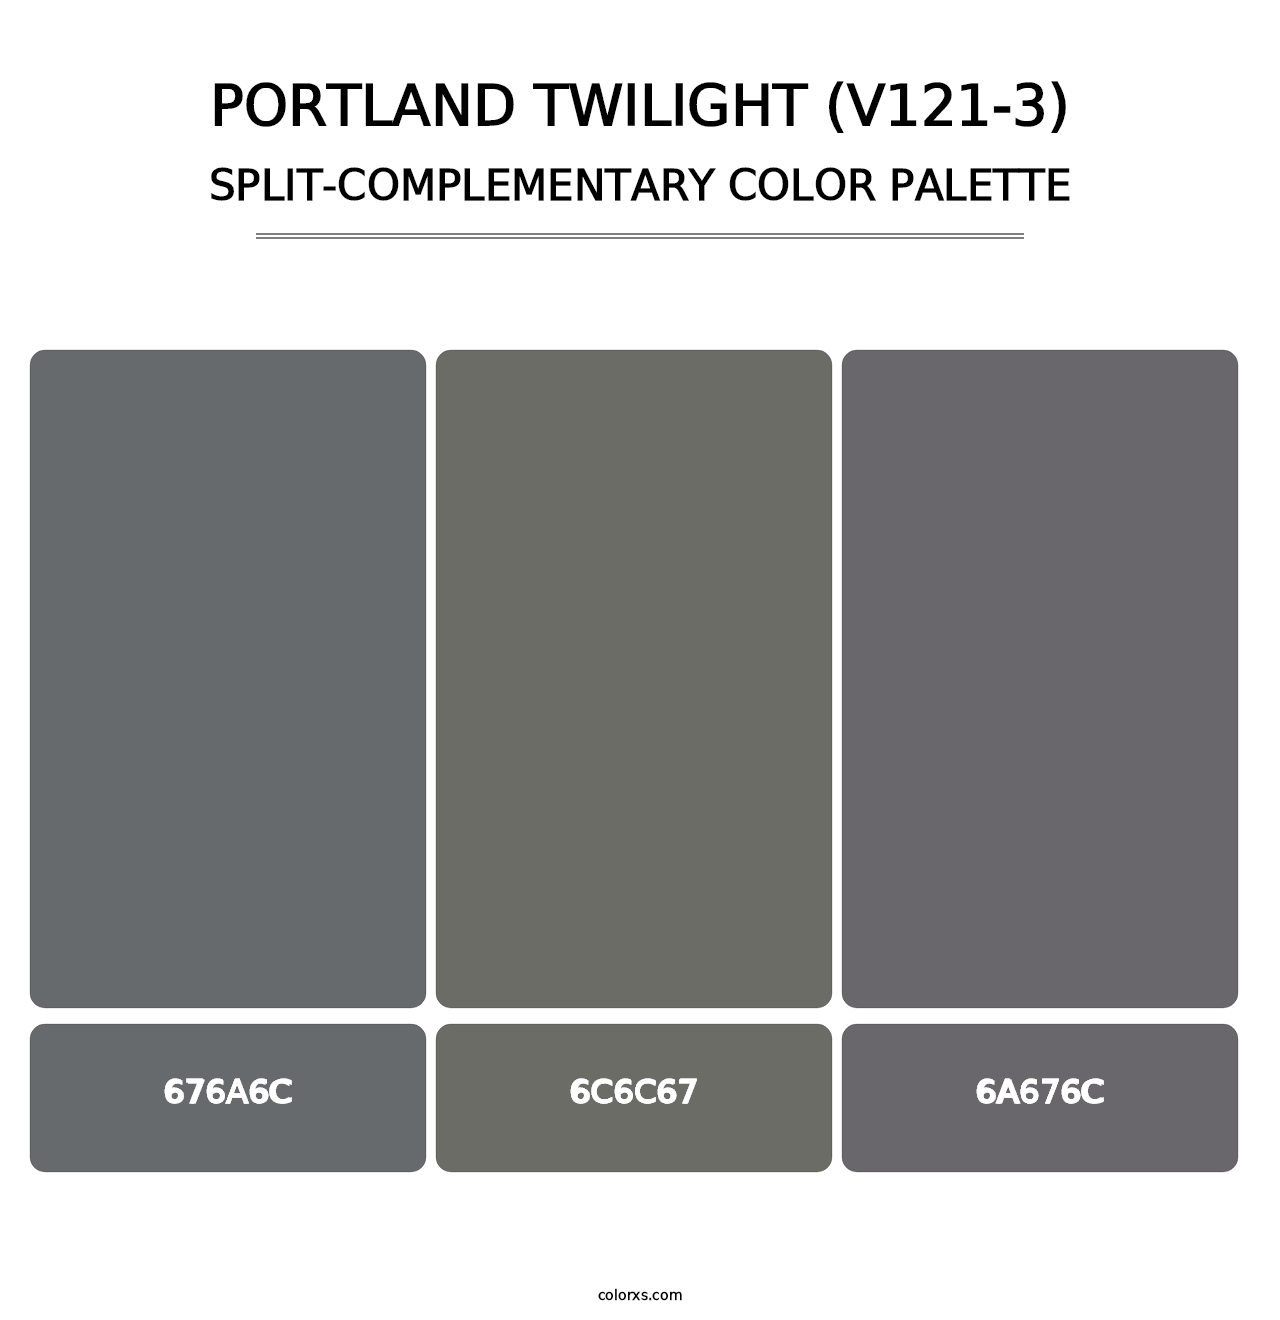 Portland Twilight (V121-3) - Split-Complementary Color Palette